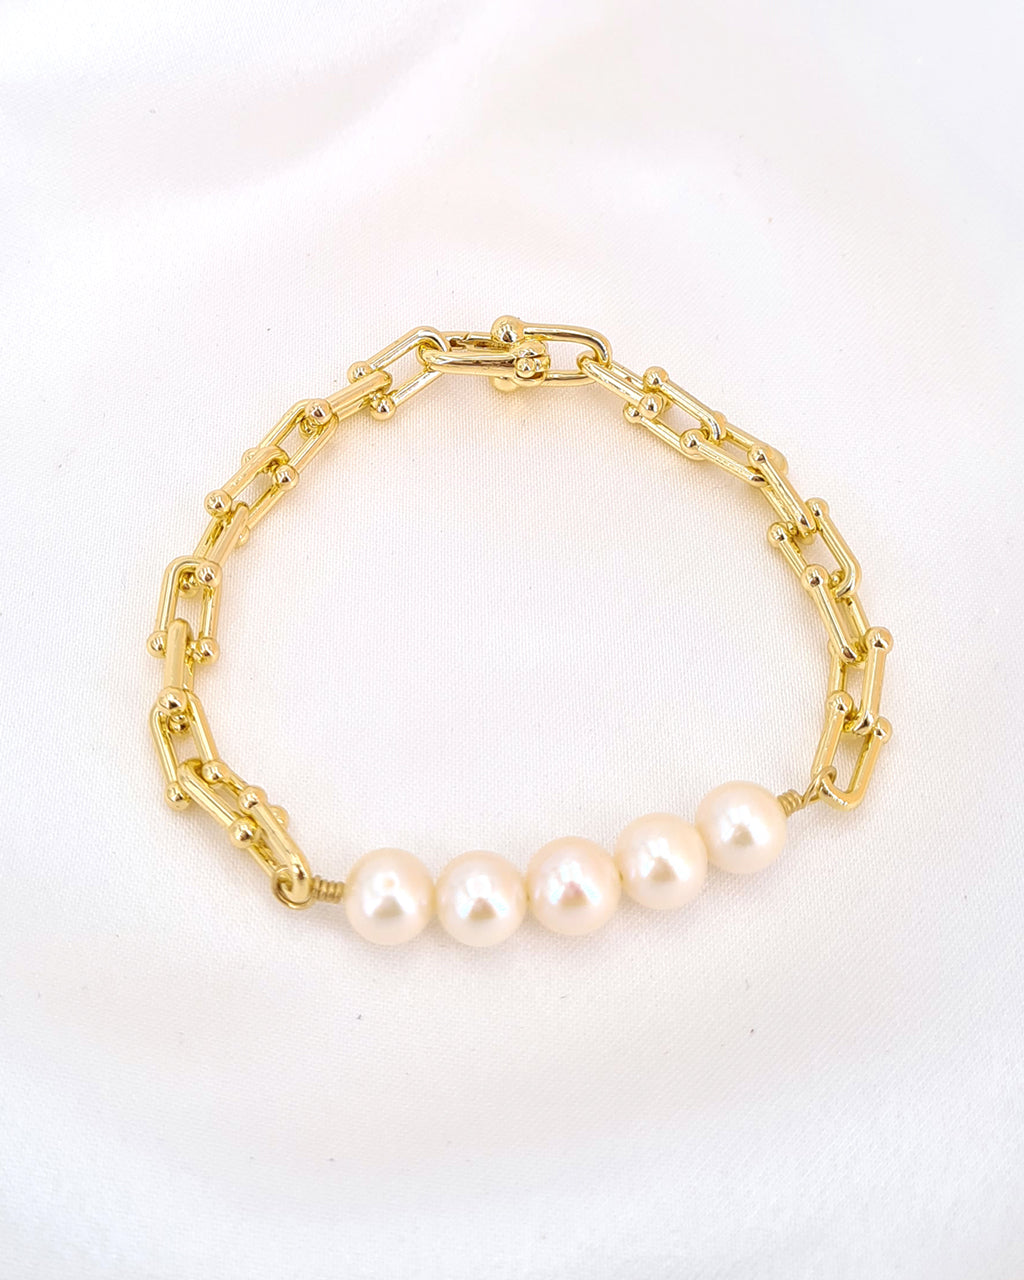 Designer Pearl Beads Studded Rakhi Bracelet for Brother/ Bhaiya – I Jewels